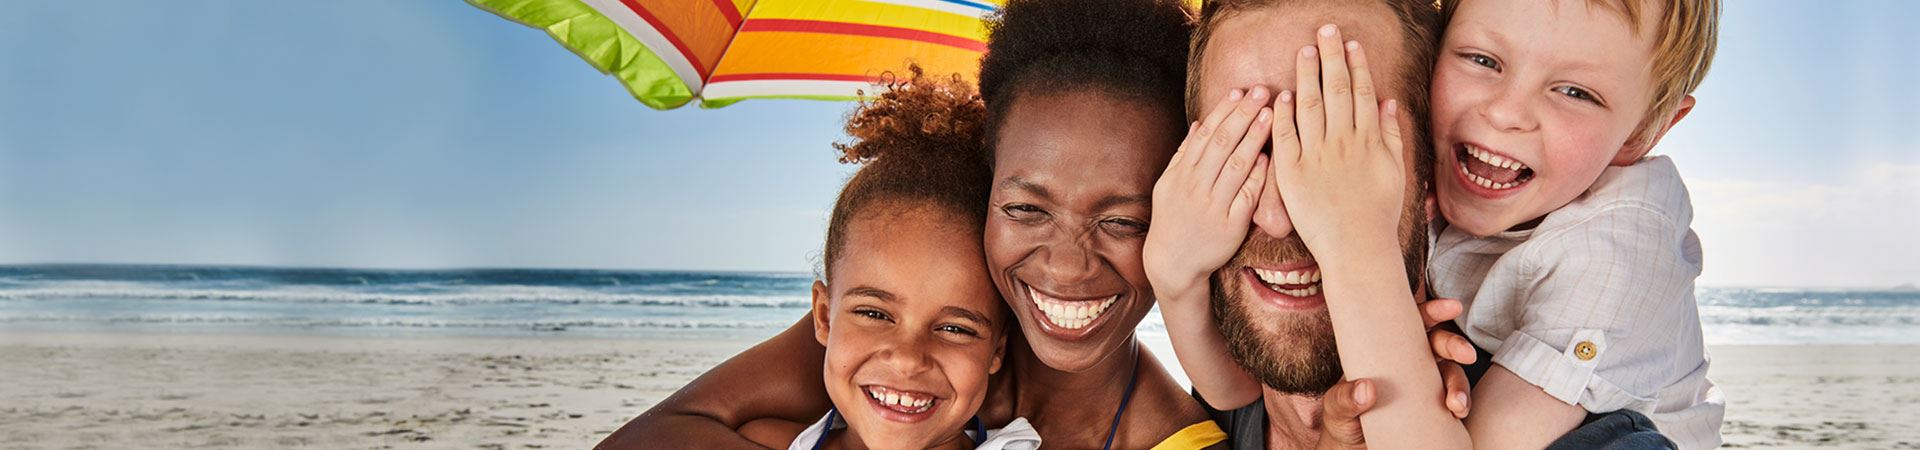 Das Bild zeigt eine Familie am Strand, bestehend aus einem Mann, einer Frau, einem Jungen und einem Mädchen. Sie sind alle zusammen unter einem Sonnenschirm, mit lächelnden und glücklichen Gesichtern. Das Mädchen wird von der Frau umarmt, während der Junge mit seinen Händen die Augen des Mannes zuhält. Im Hintergrund ist das Meer zu sehen, am Ende eines Sandstreifens.